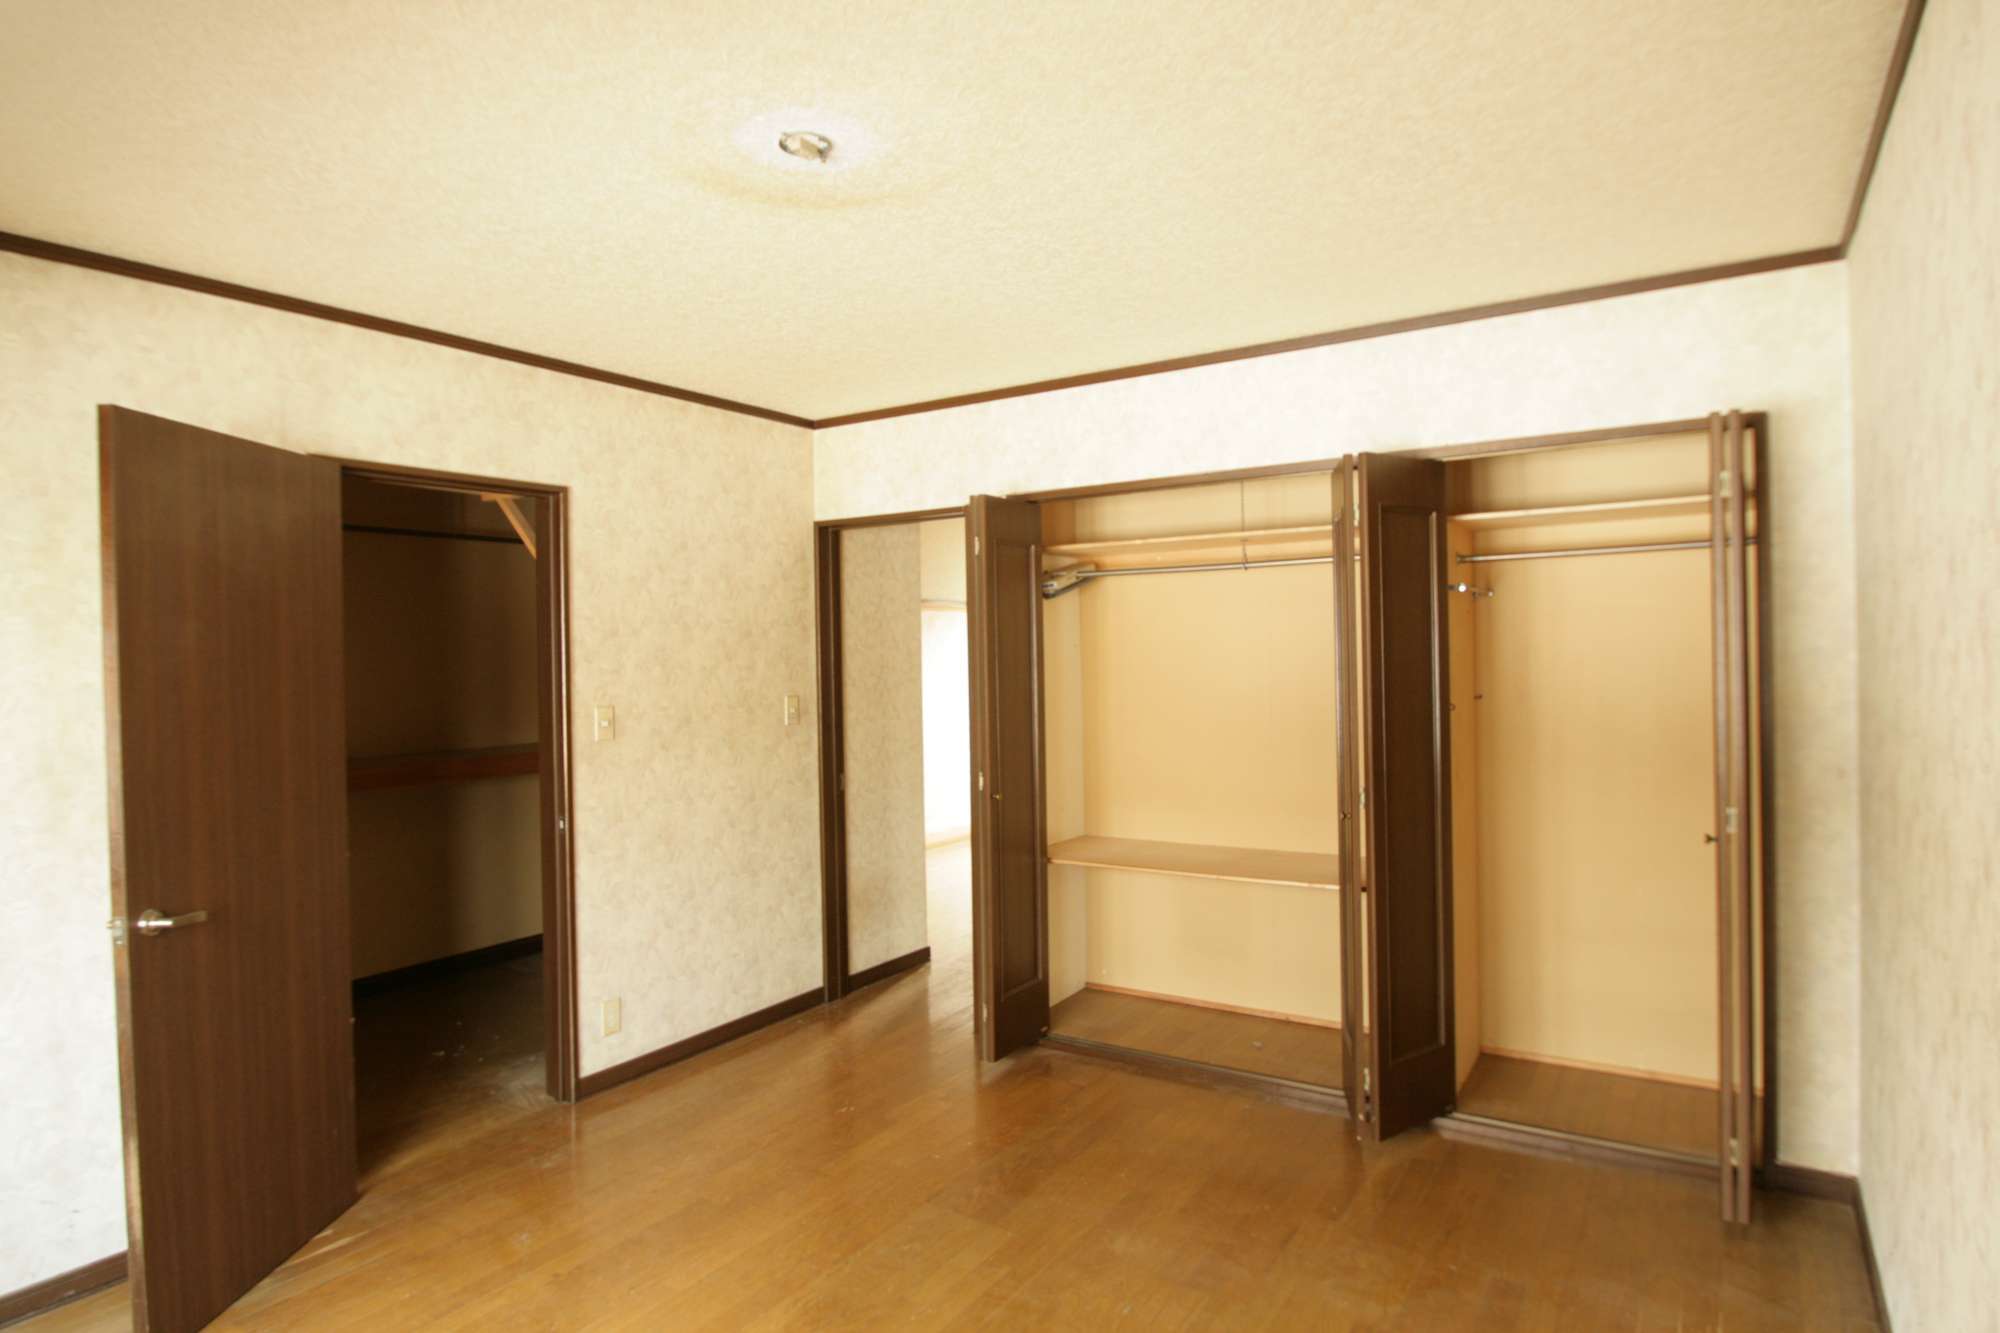 【Before】2階の部屋 -  -  - 